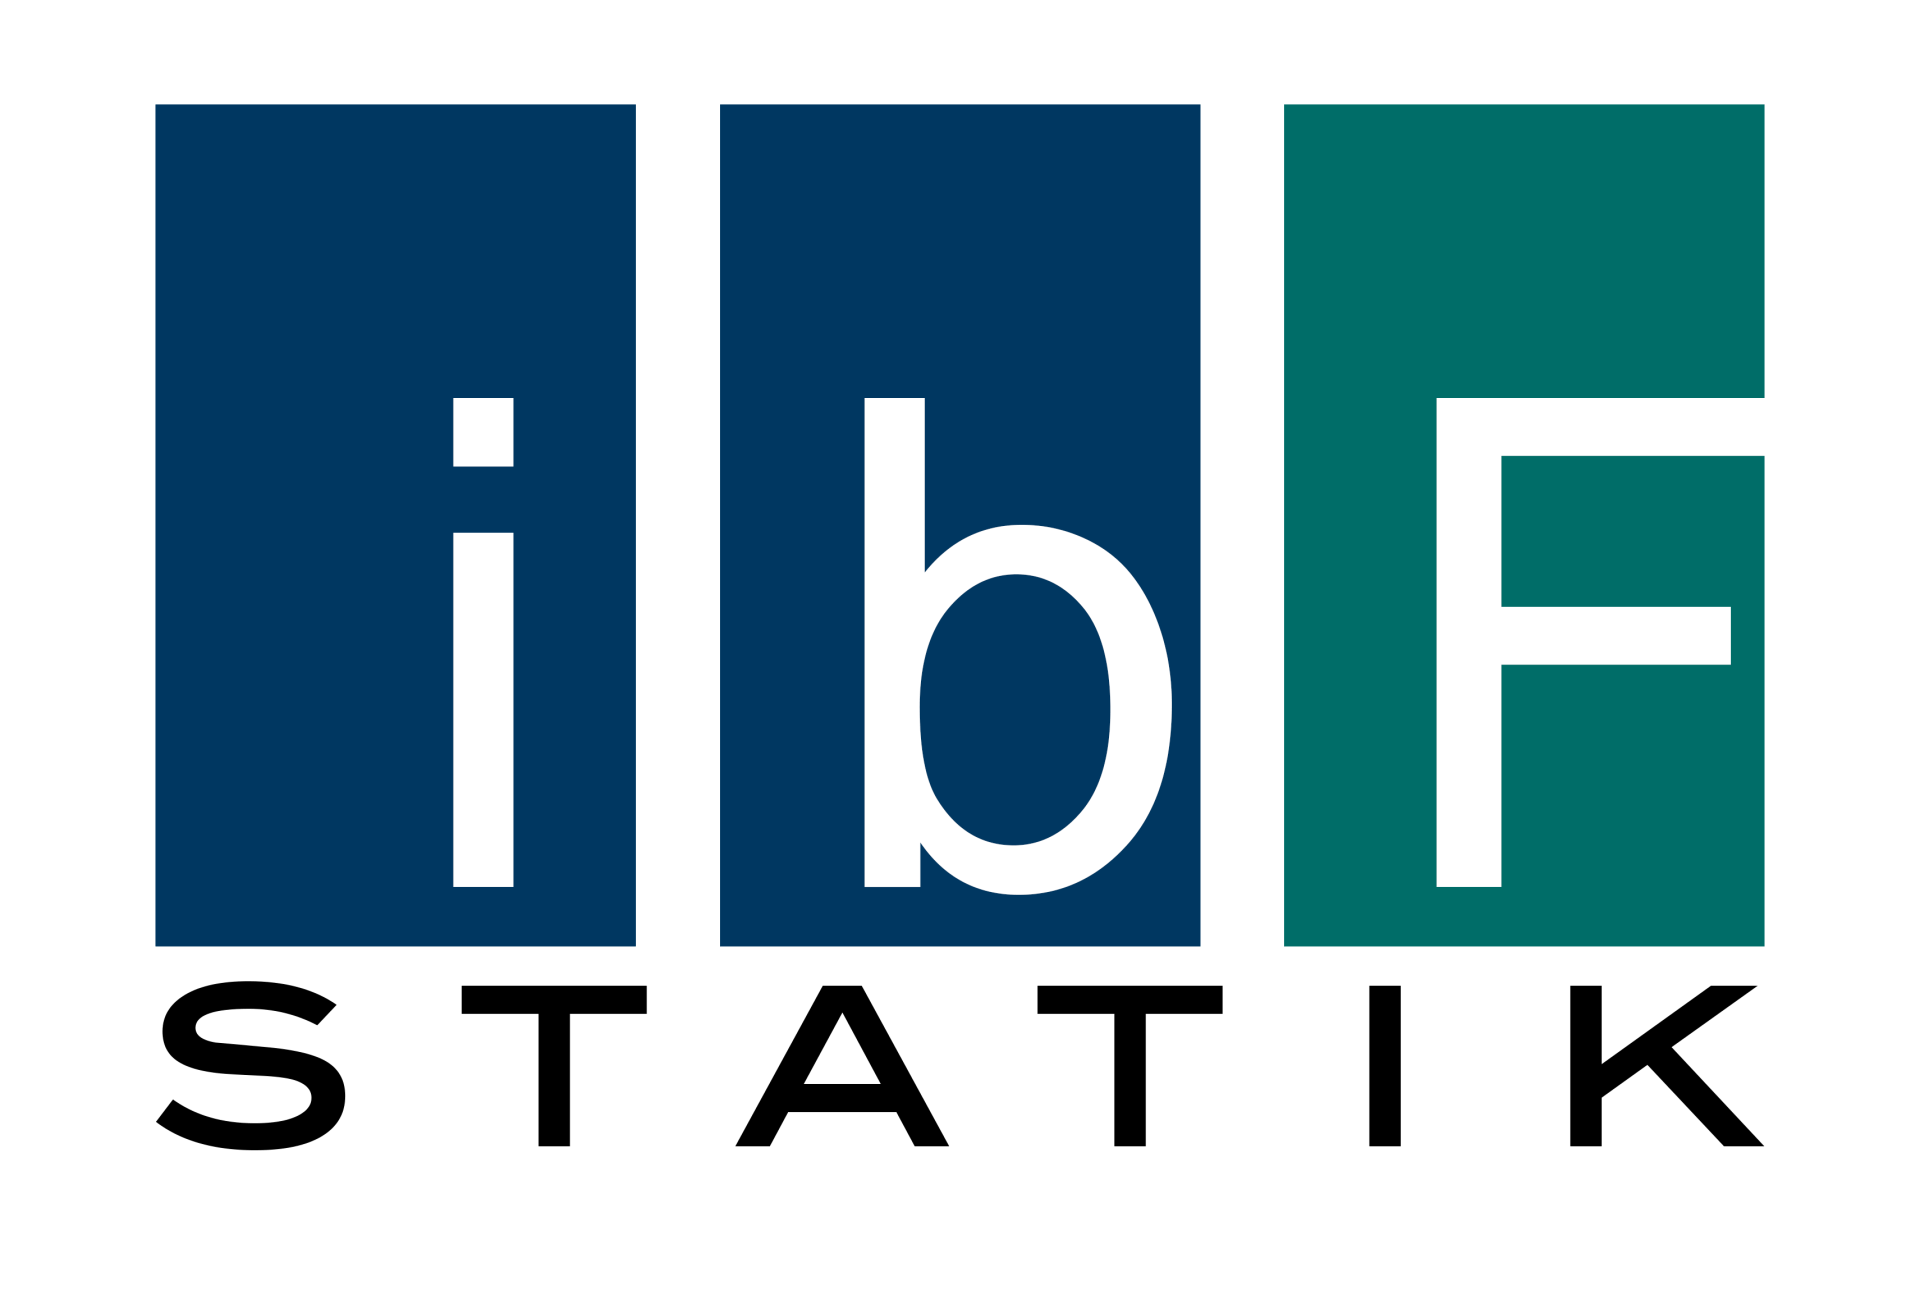 ibF Statik GmbH